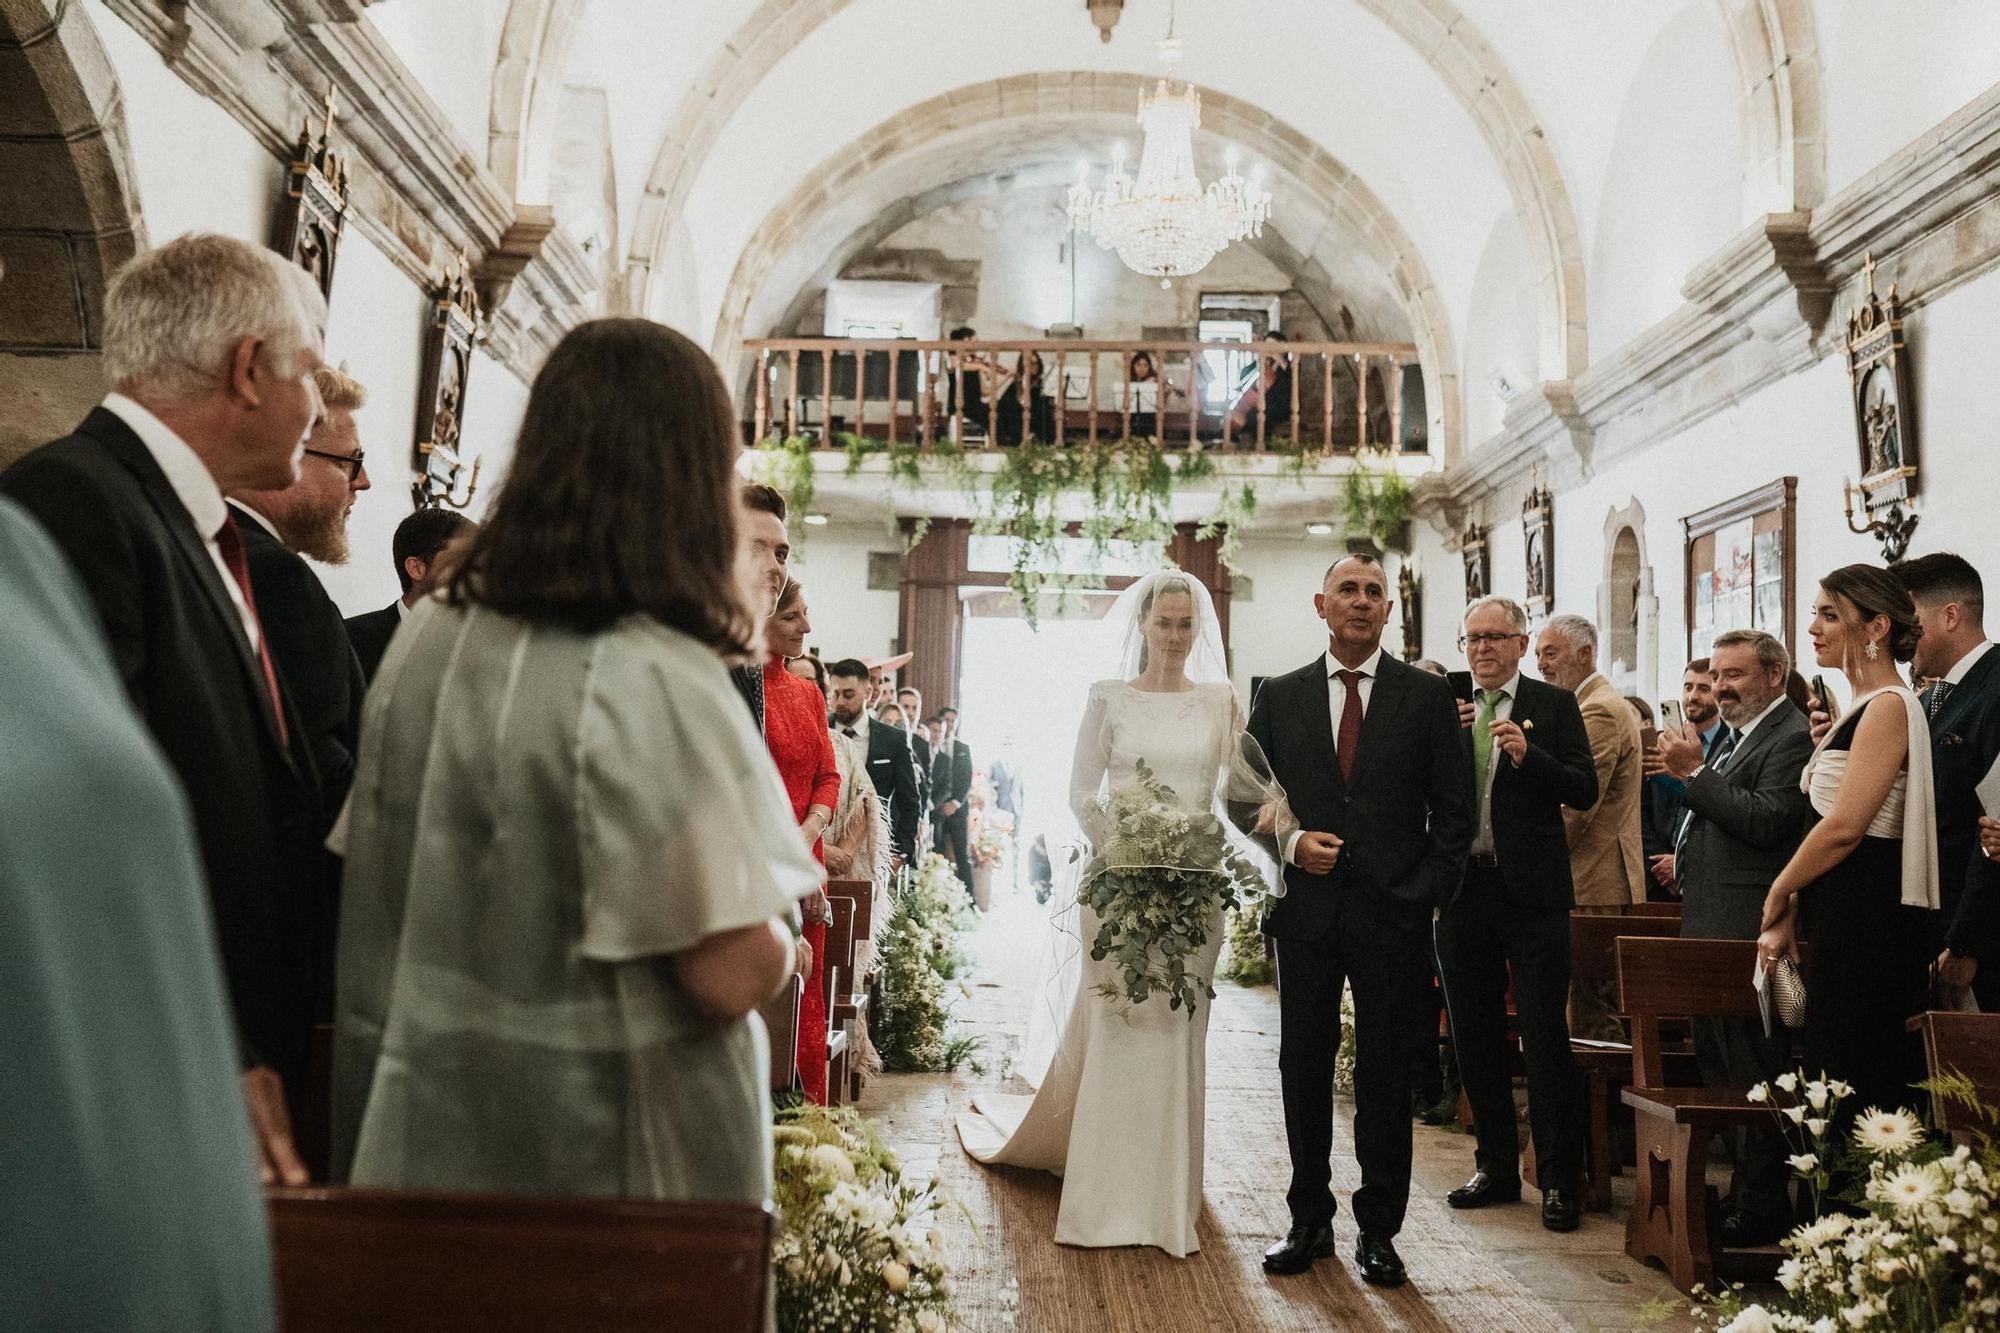 La boda en Boiro de Ismael y Betina, familiar de los fundadores de conservas Rianxeira, en fotos